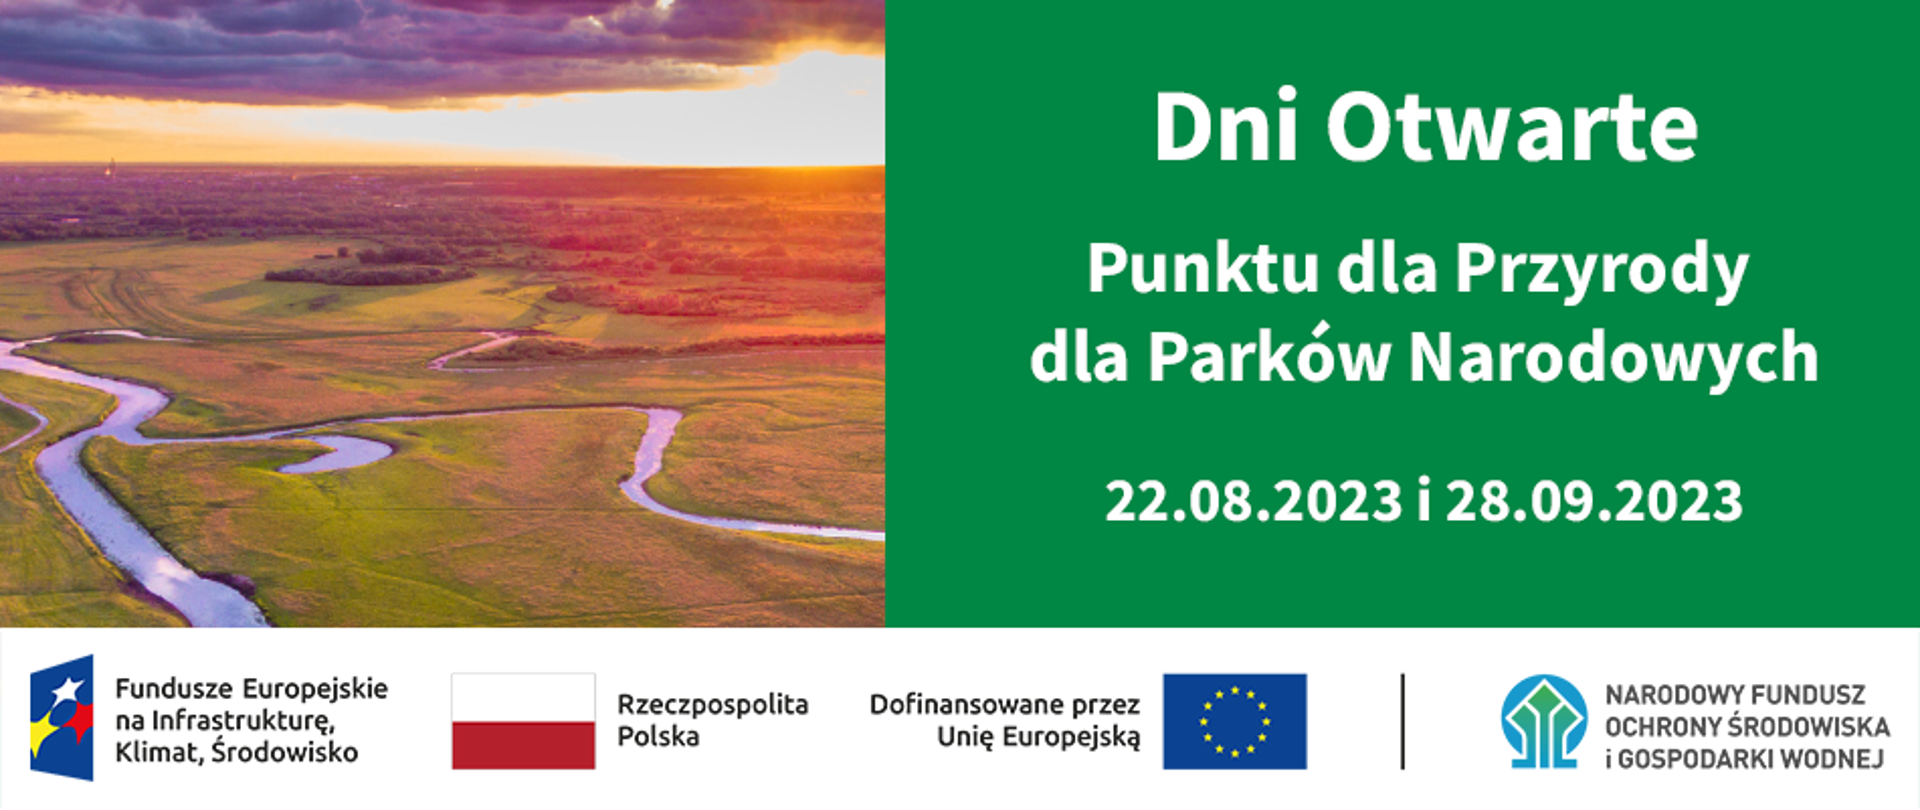 Infografika - po lewej zdjęcie rzeki, po prawej napis: "Dni Otwarte Punktu dla Przyrody dla Parków Narodowych 22.08.2023 i 28.09.2023", na dole ciąg znaków: FEPW, Rzeczpospolita Polska, UE i NFOŚiGW.